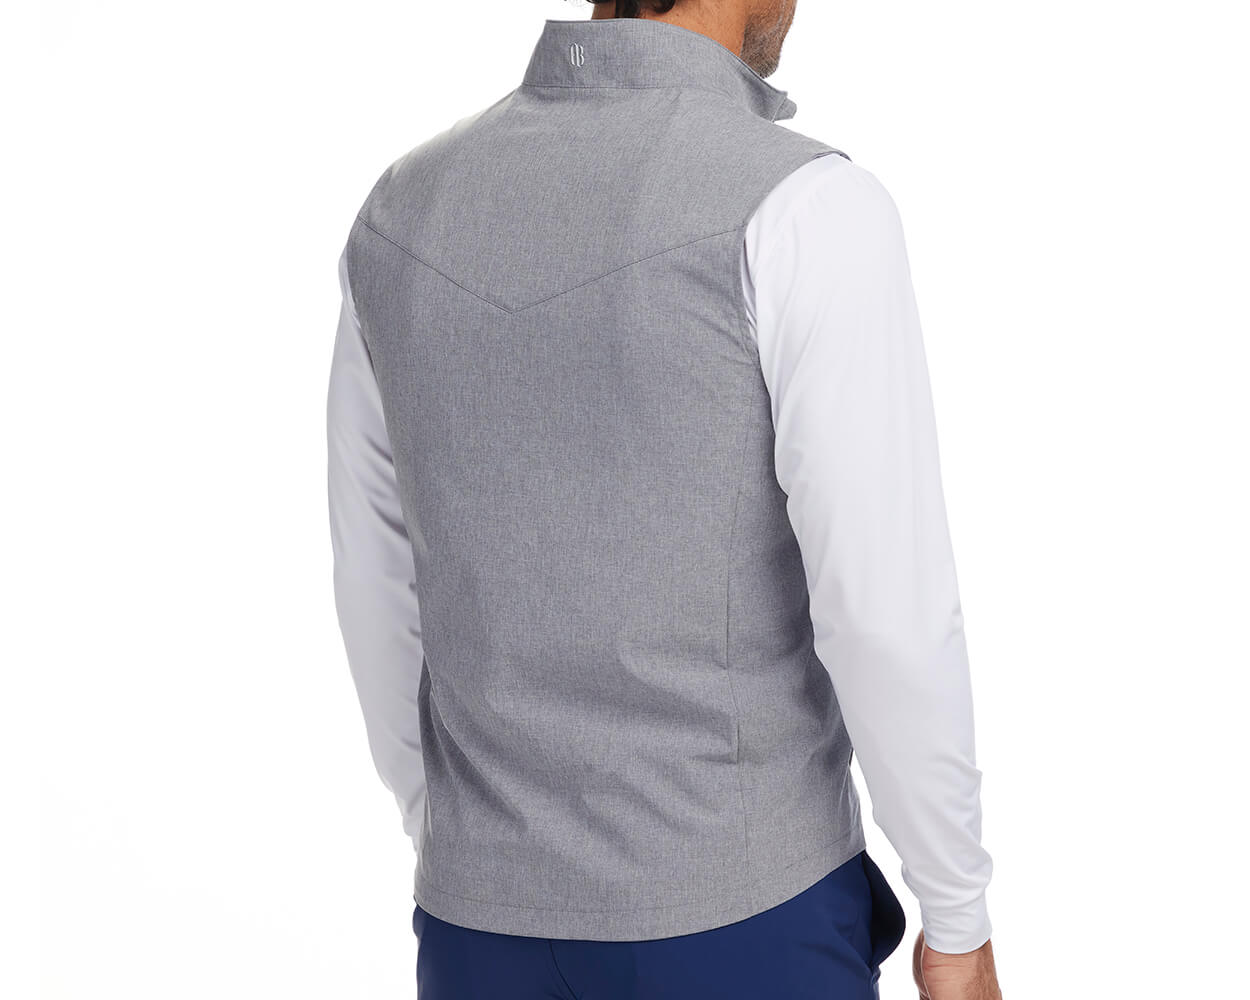 Back shot of Holderness and Bourne vest gray modeled on man's torso.